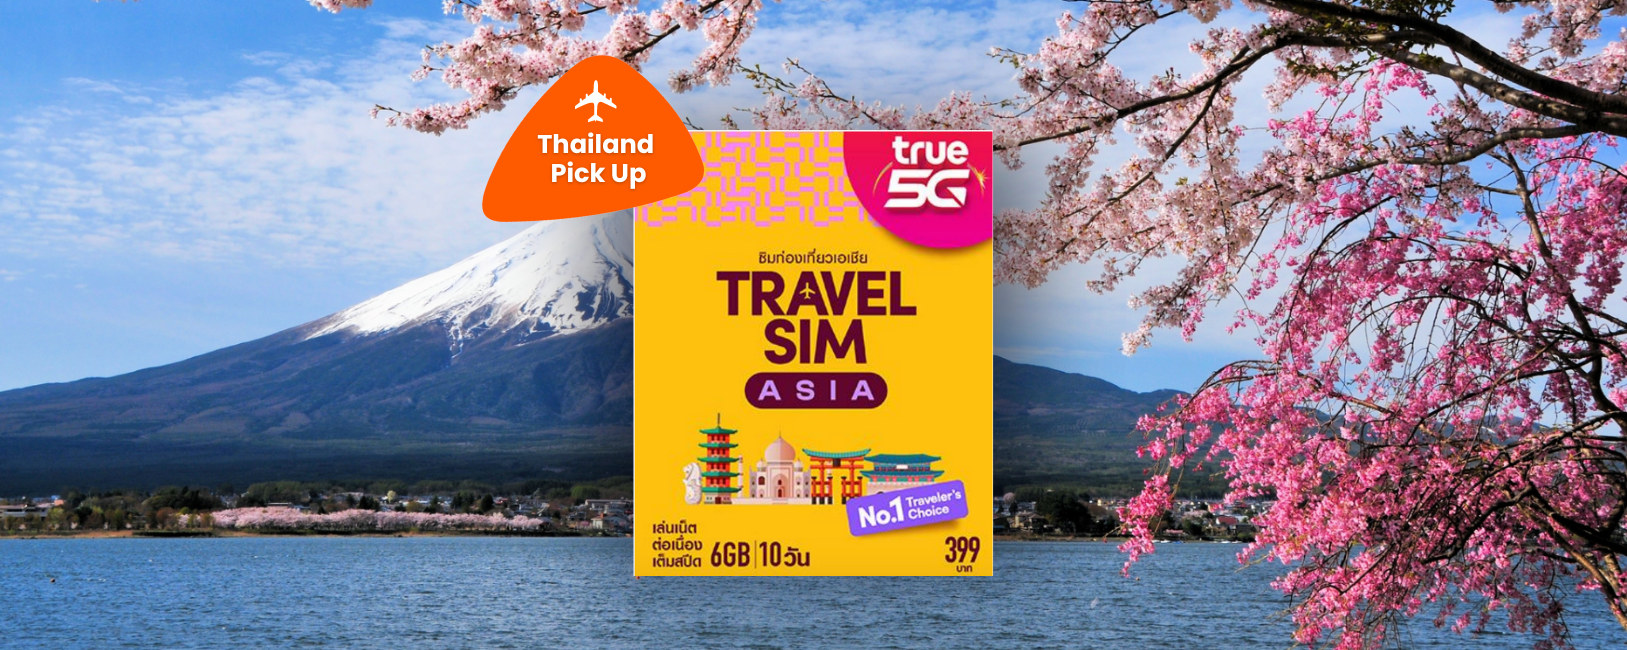 【泰國領取】亞洲地區True 5G Travel SIM 卡（不含泰國）